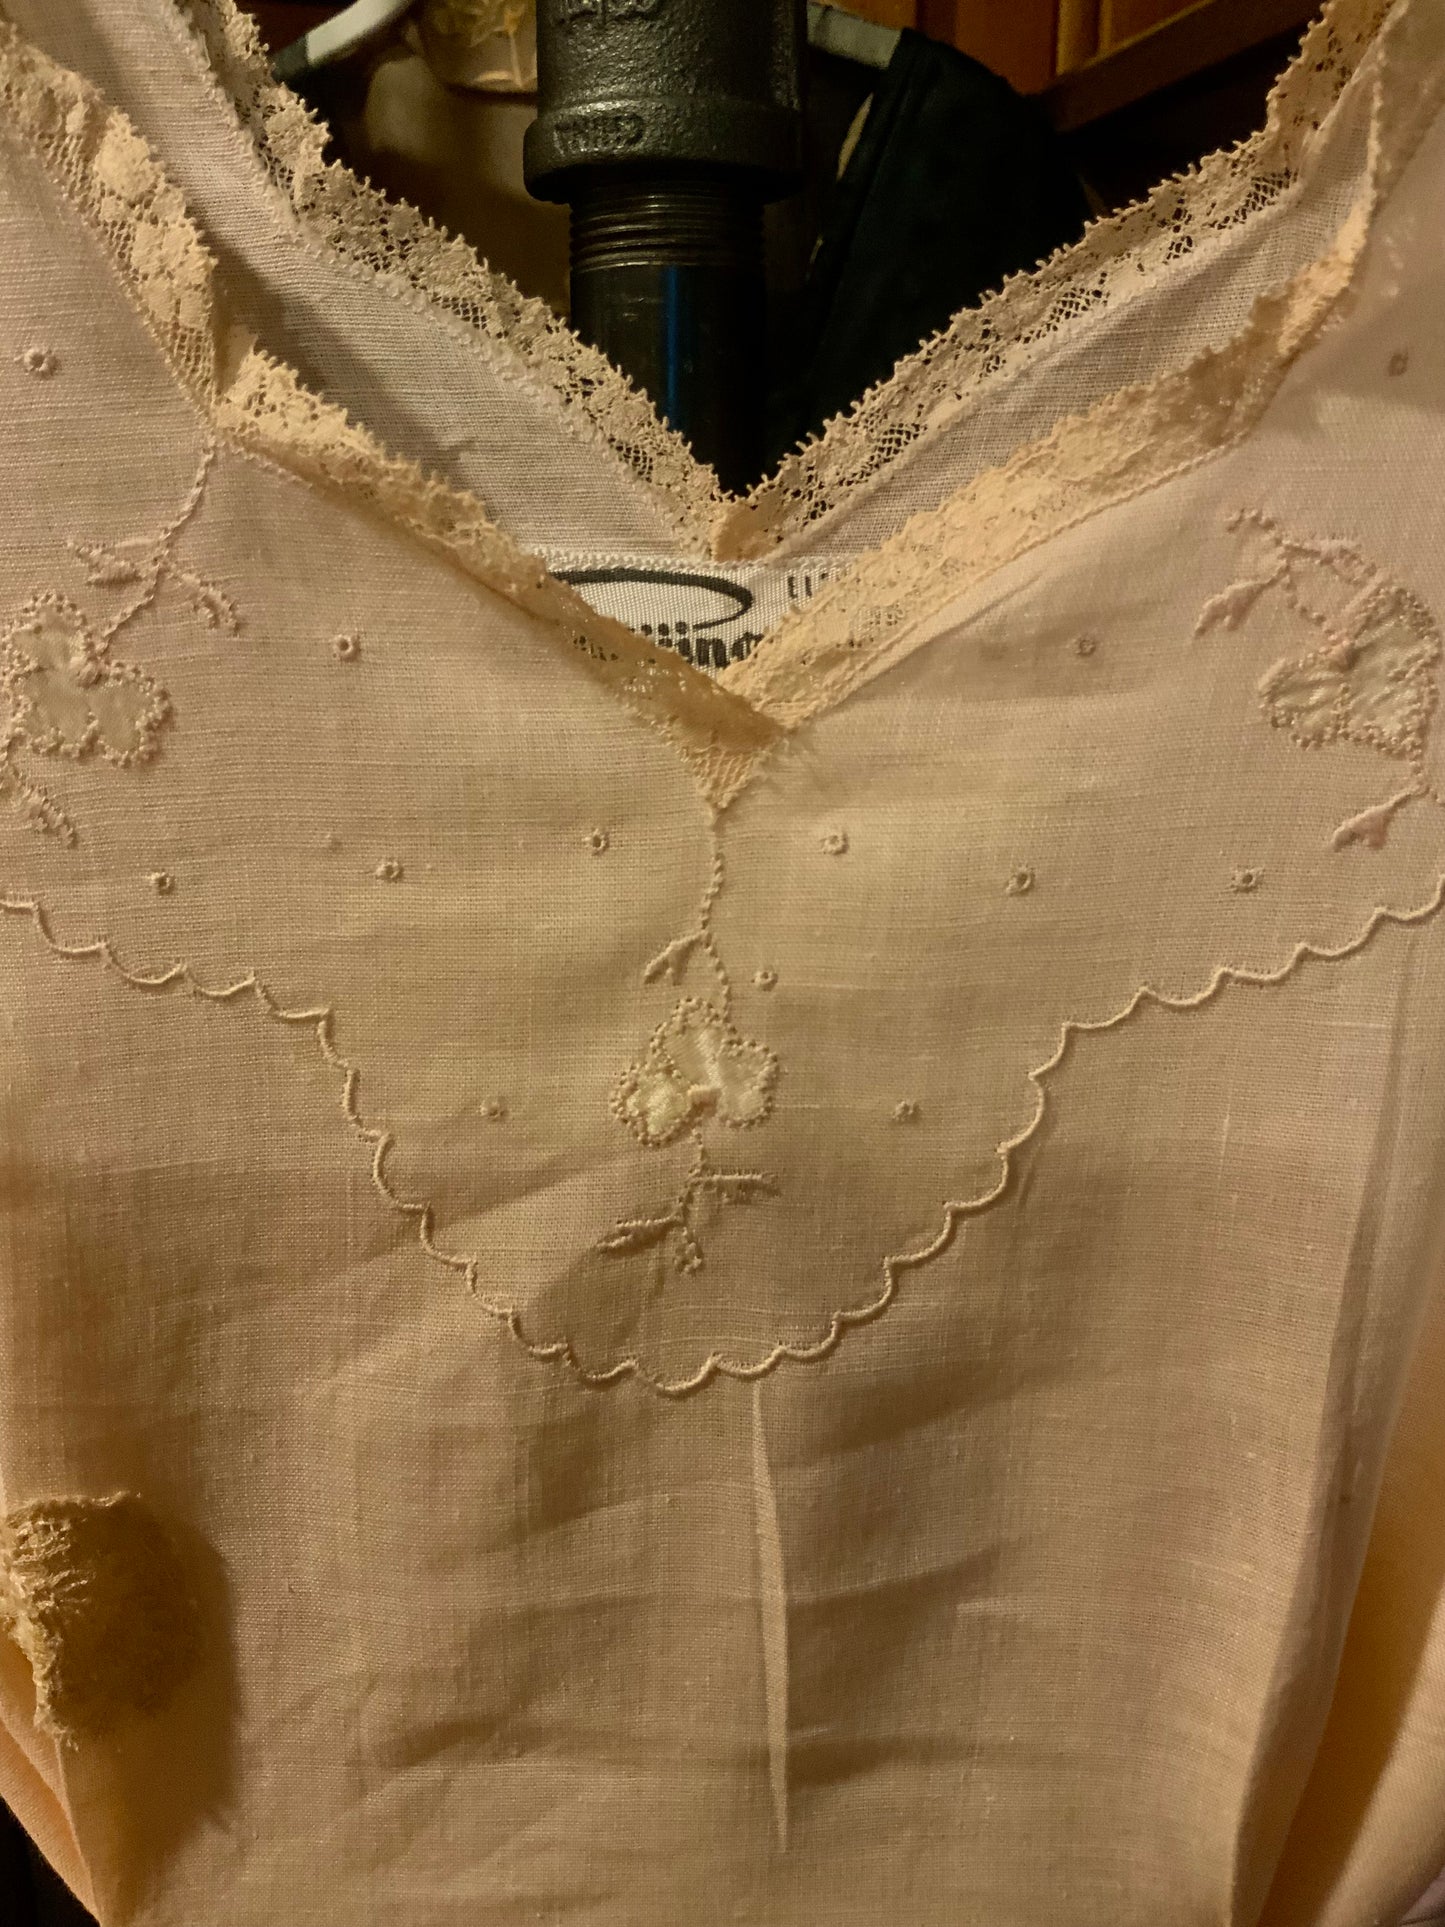 Edwardian Cotton Nightgown - 1910